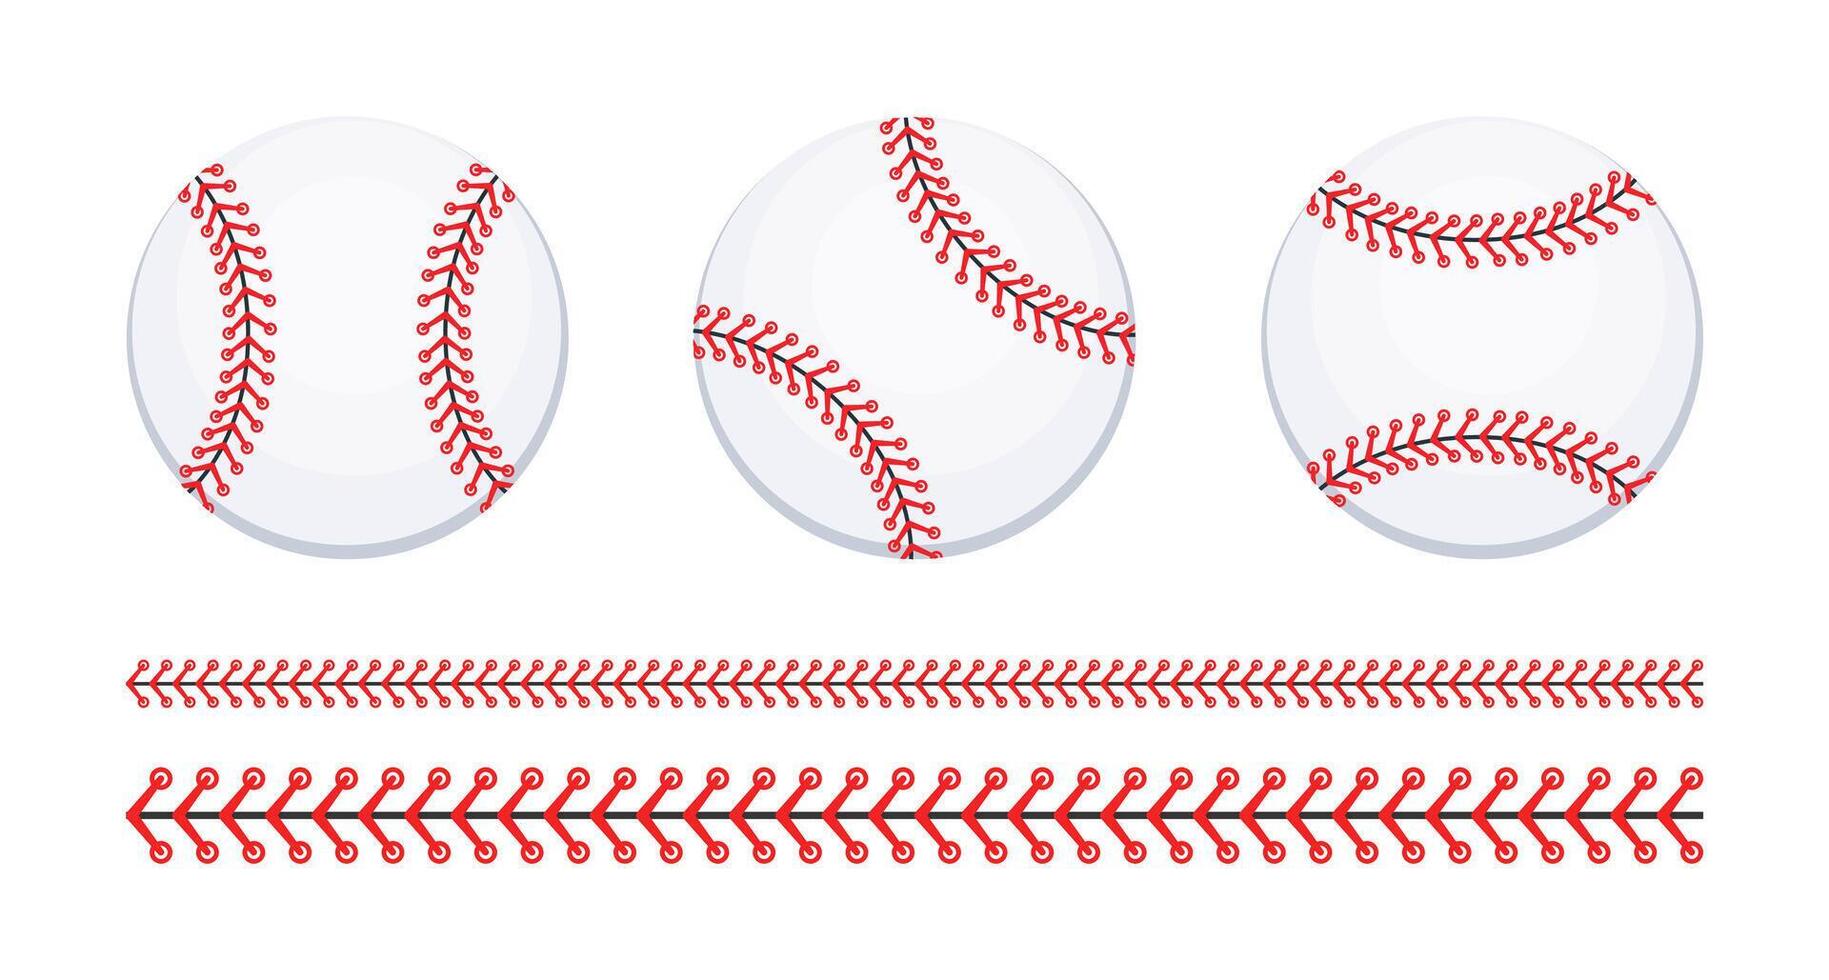 béisbol pelota. béisbol puntadas sofbol base pelota. vector ilustración